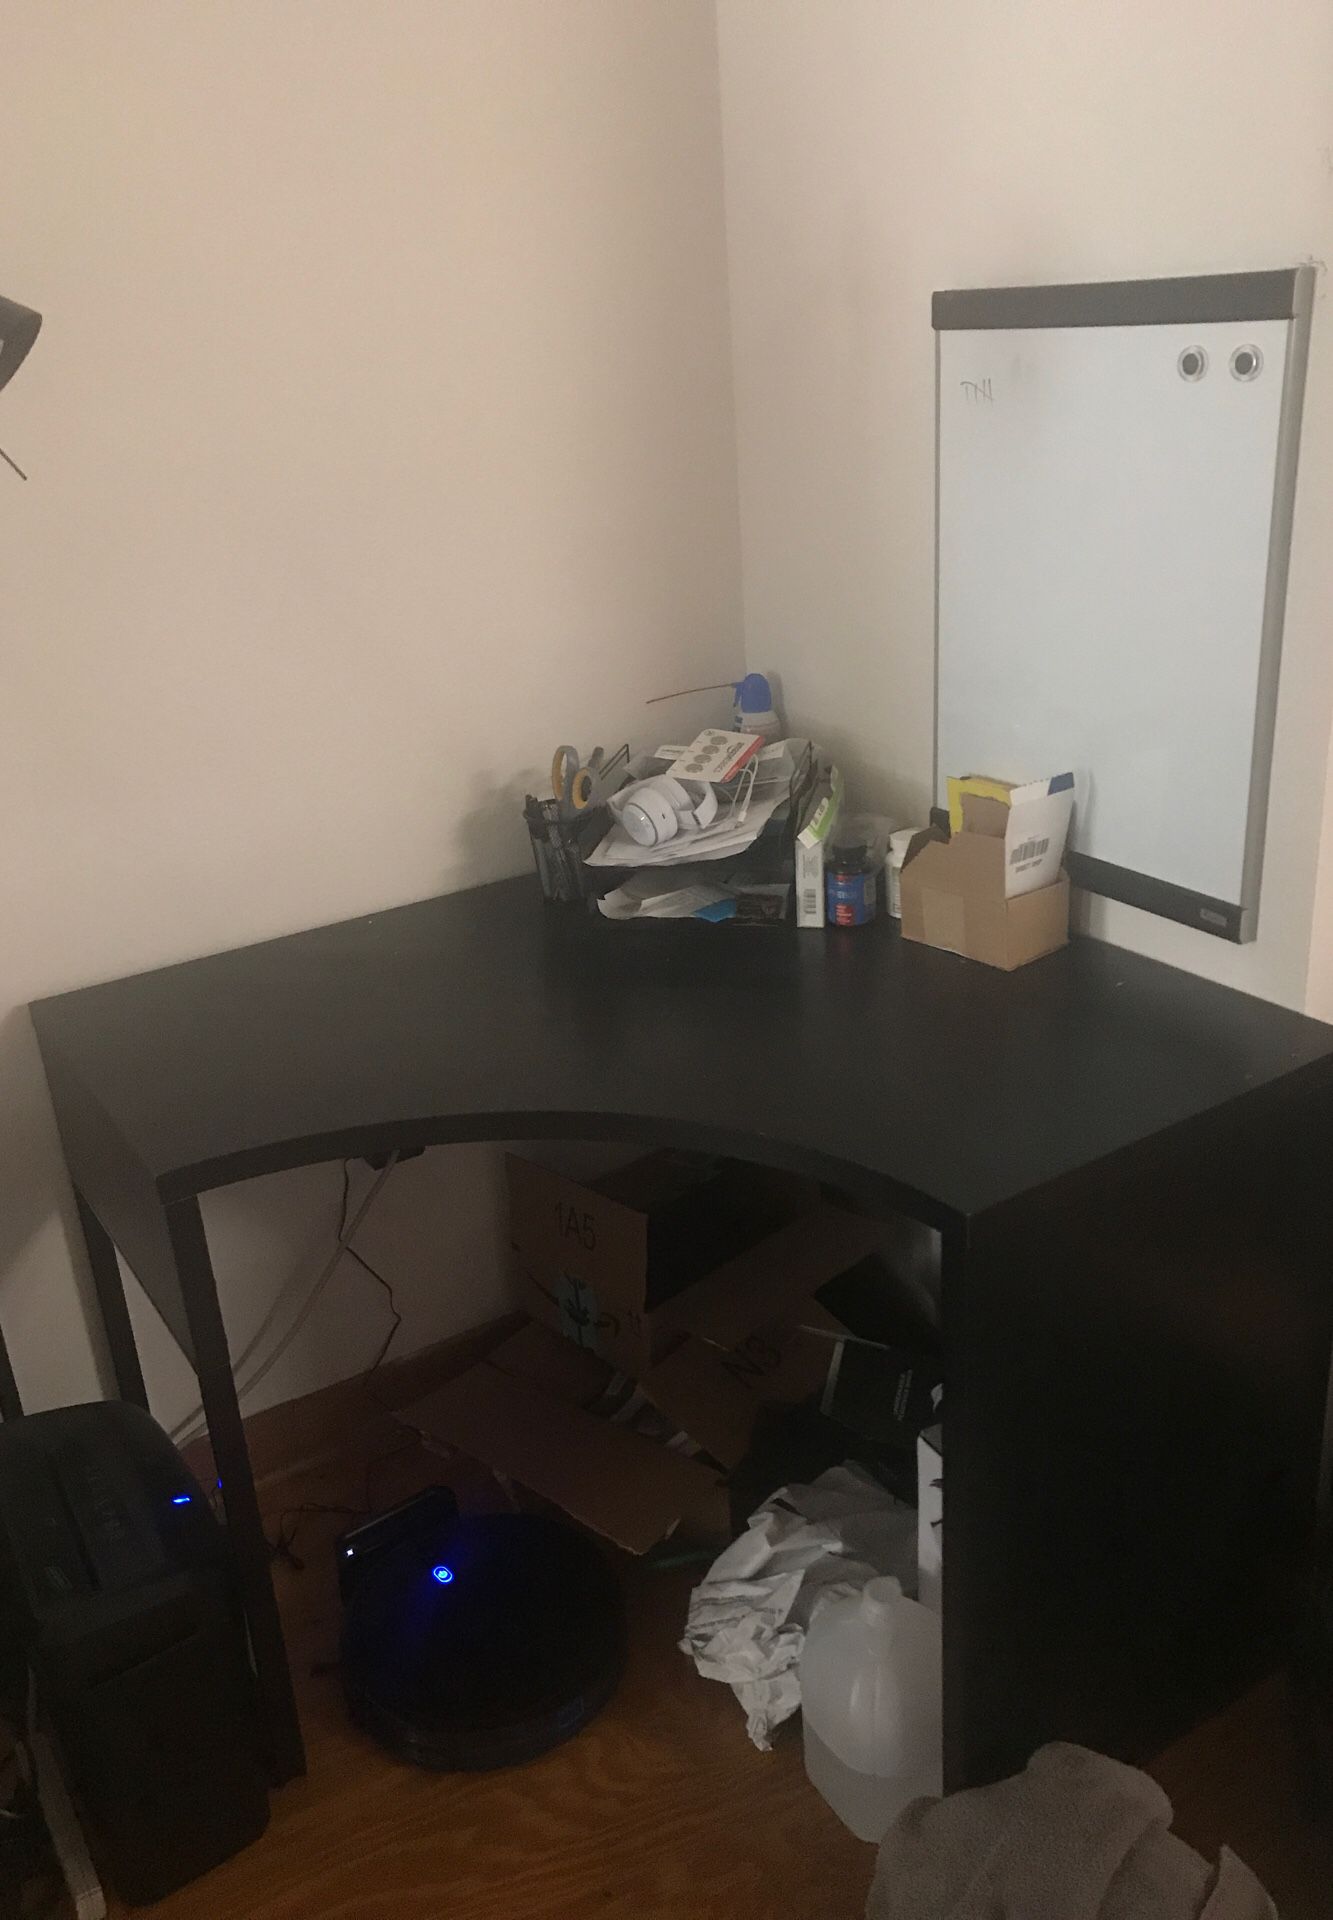 Small ikea desk